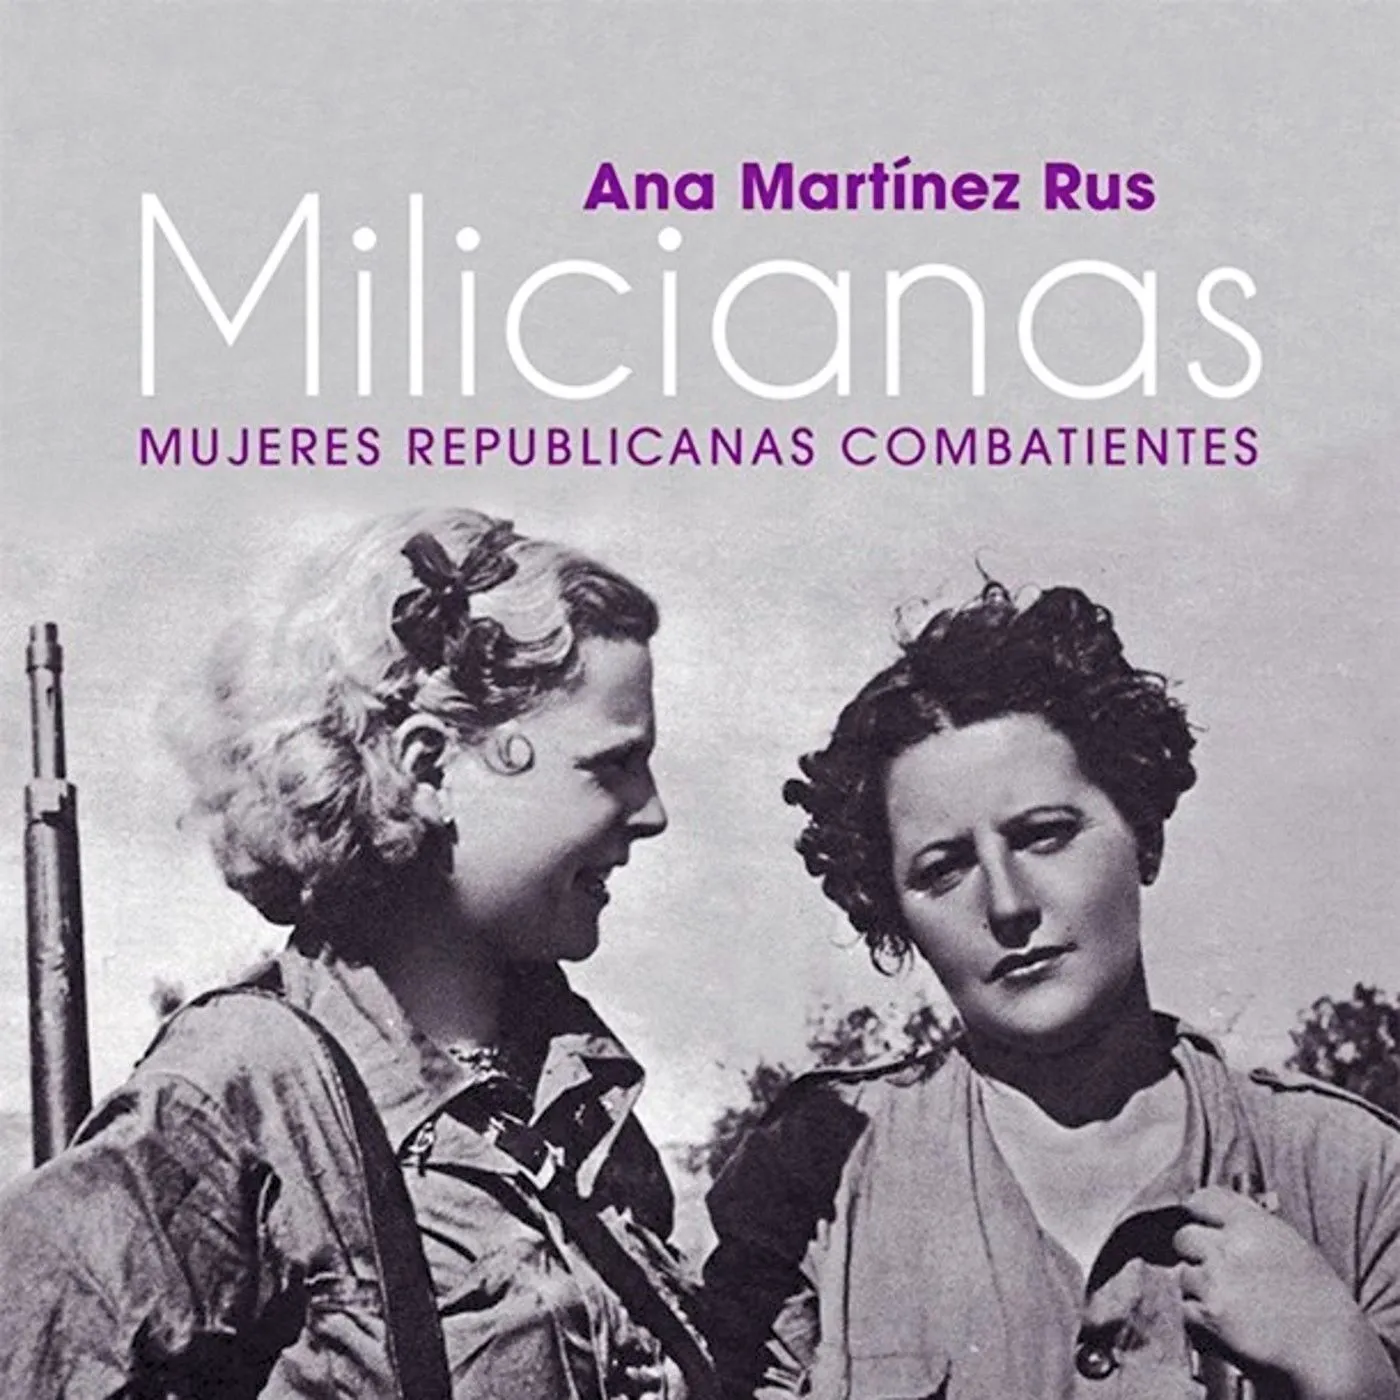 Ana Martínez Rus, Milicianas. Mujeres republicanas combatientes, 2018.